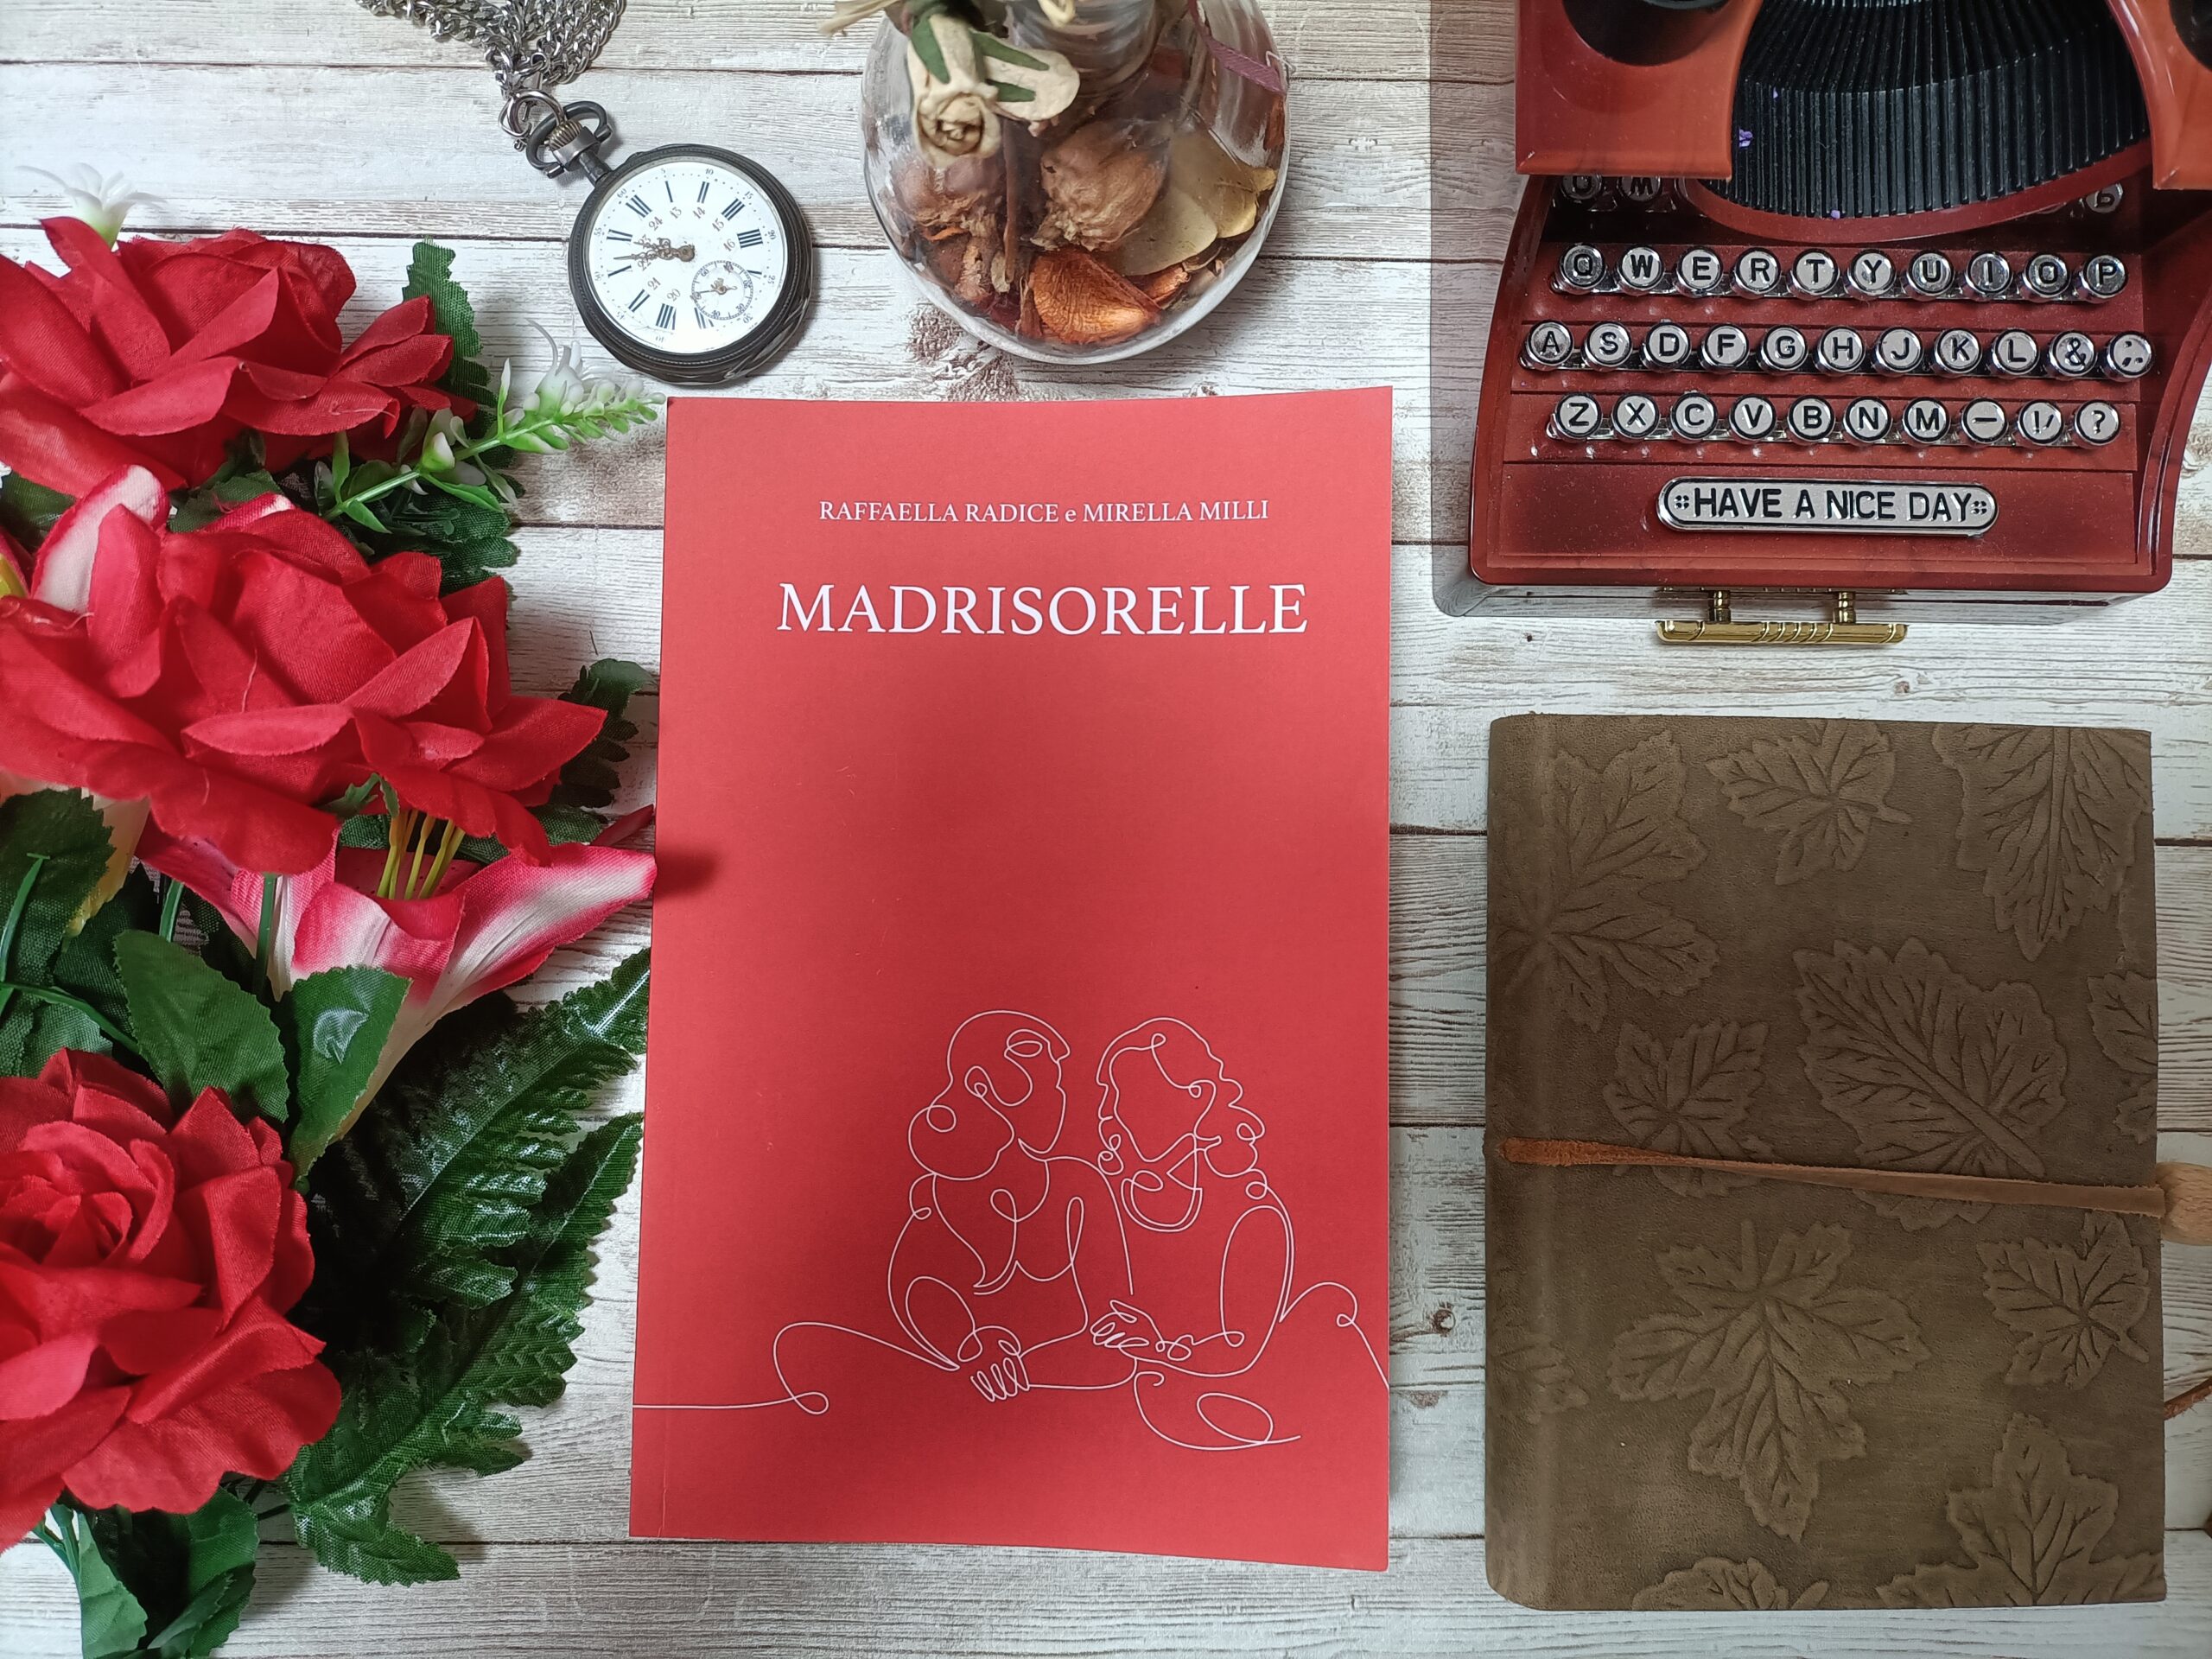 Recensione: “MadriSorelle” di Raffaella Radice e Mirella Milli